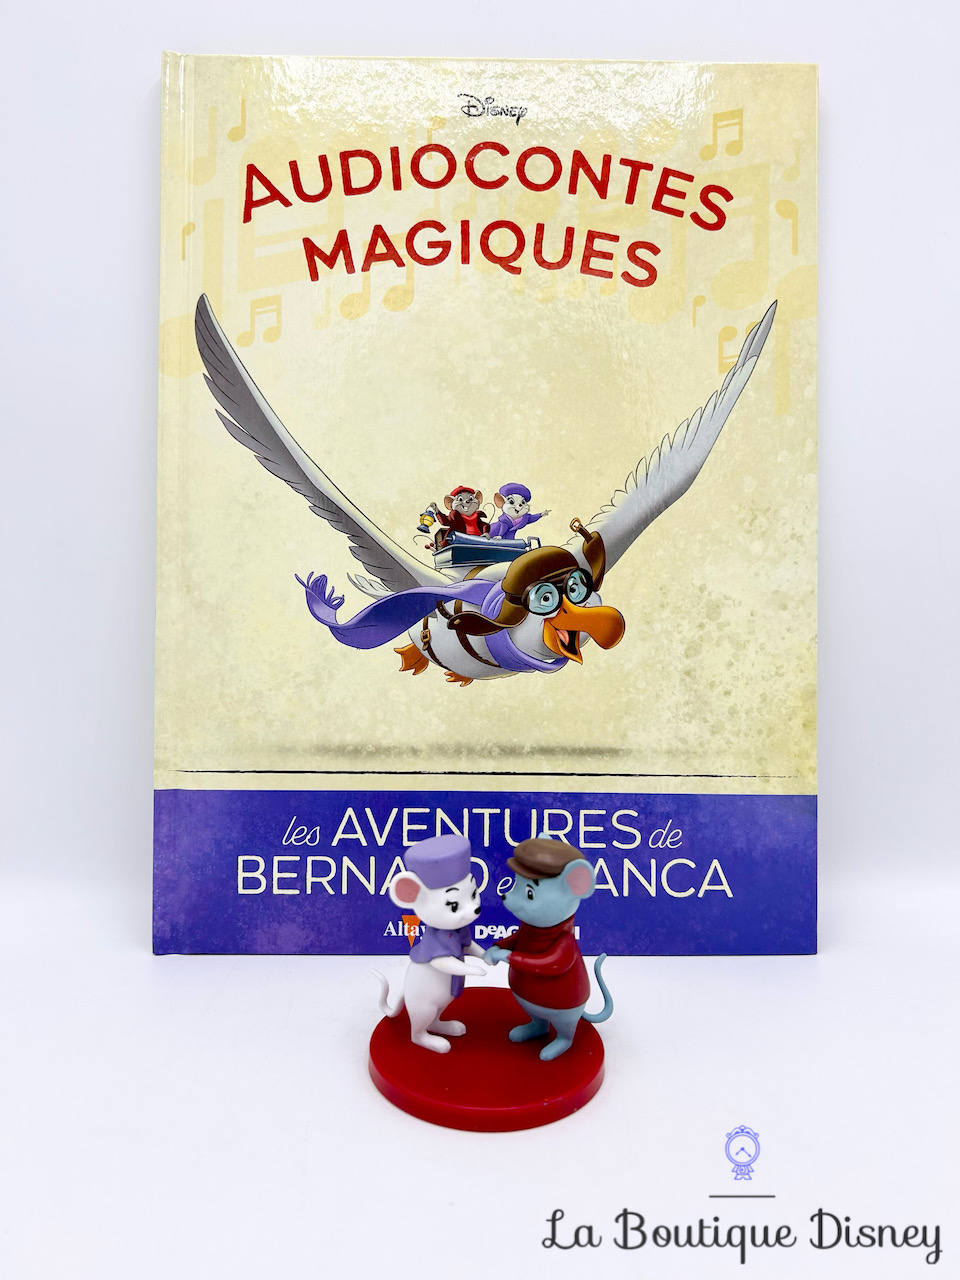 Livre Audiocontes Magiques Les aventures de Bernard et Bianca Disney Altaya encyclopédie figurine